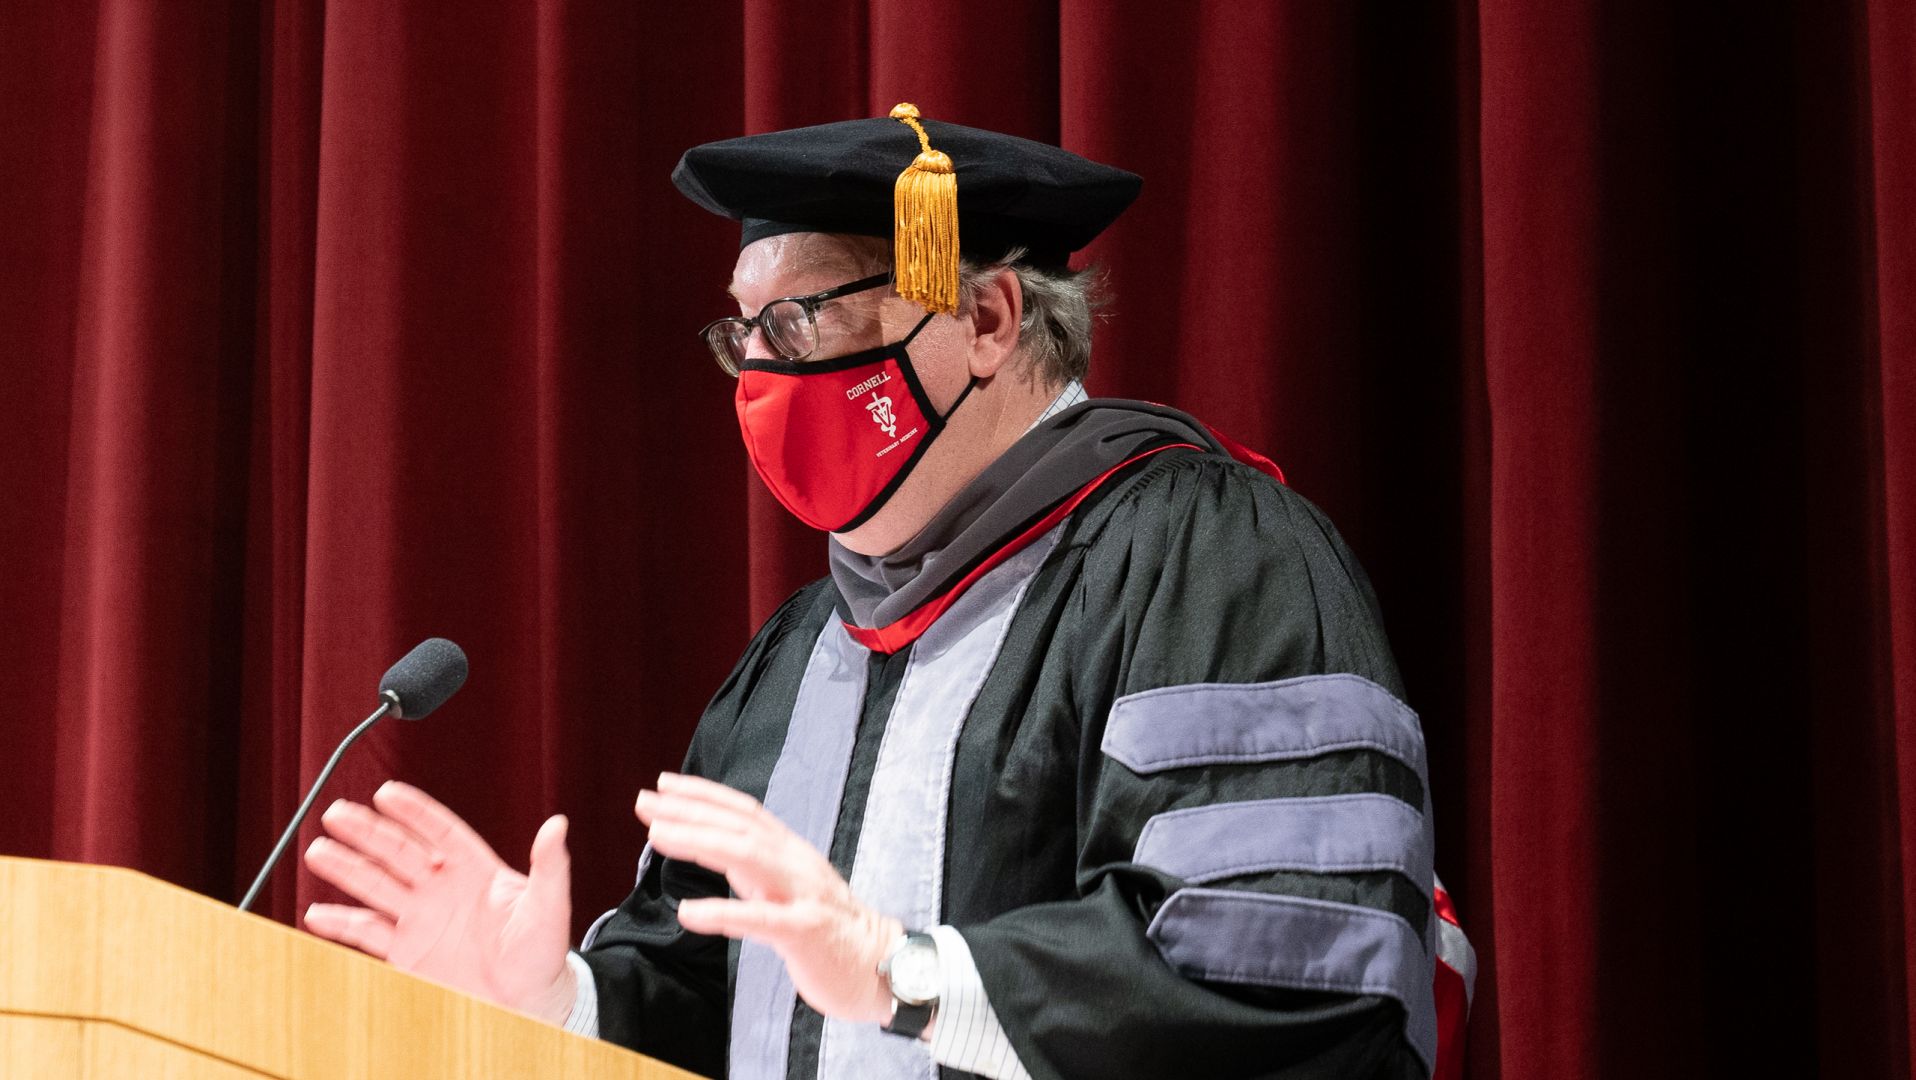 Dean giving graduation speech